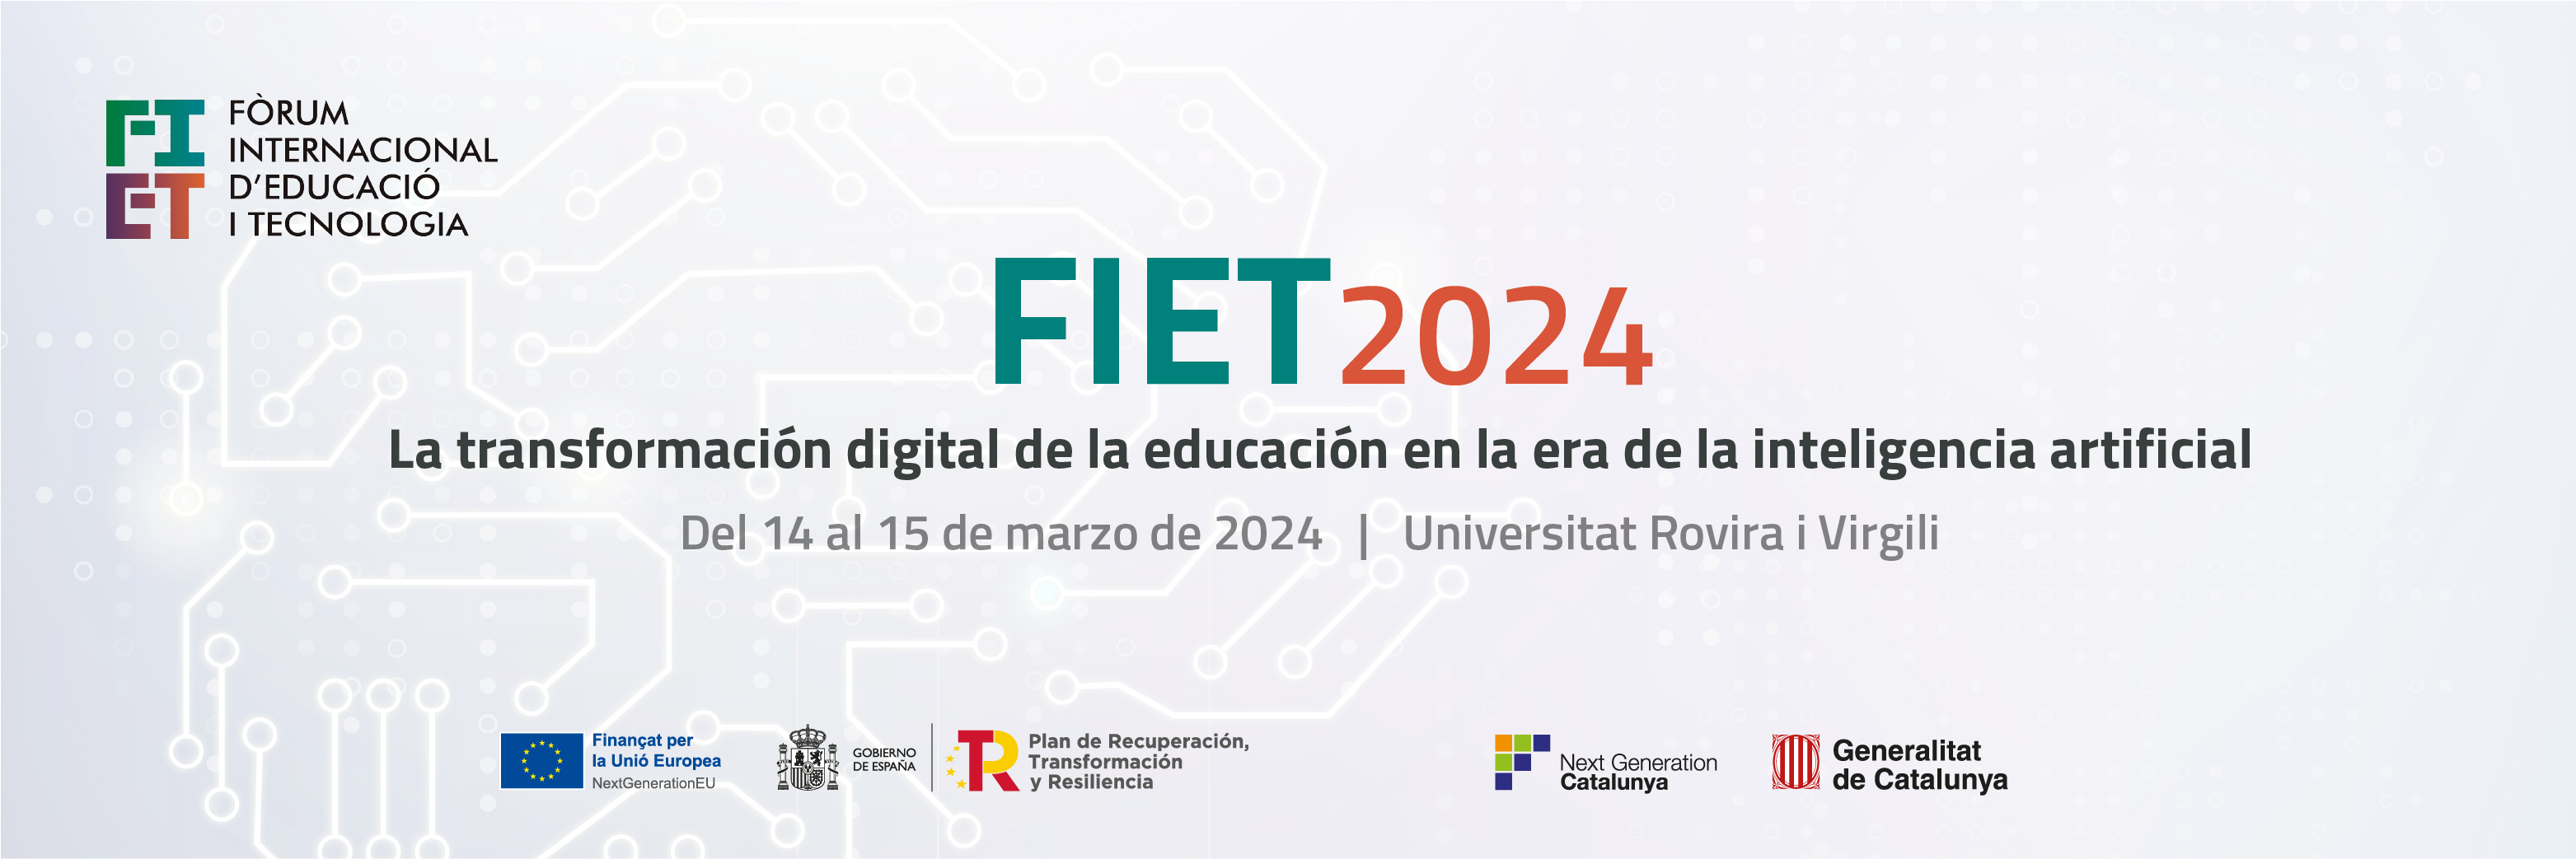 FIET 2024 – La transformación digital de la educación en la era de la inteligencia artificial